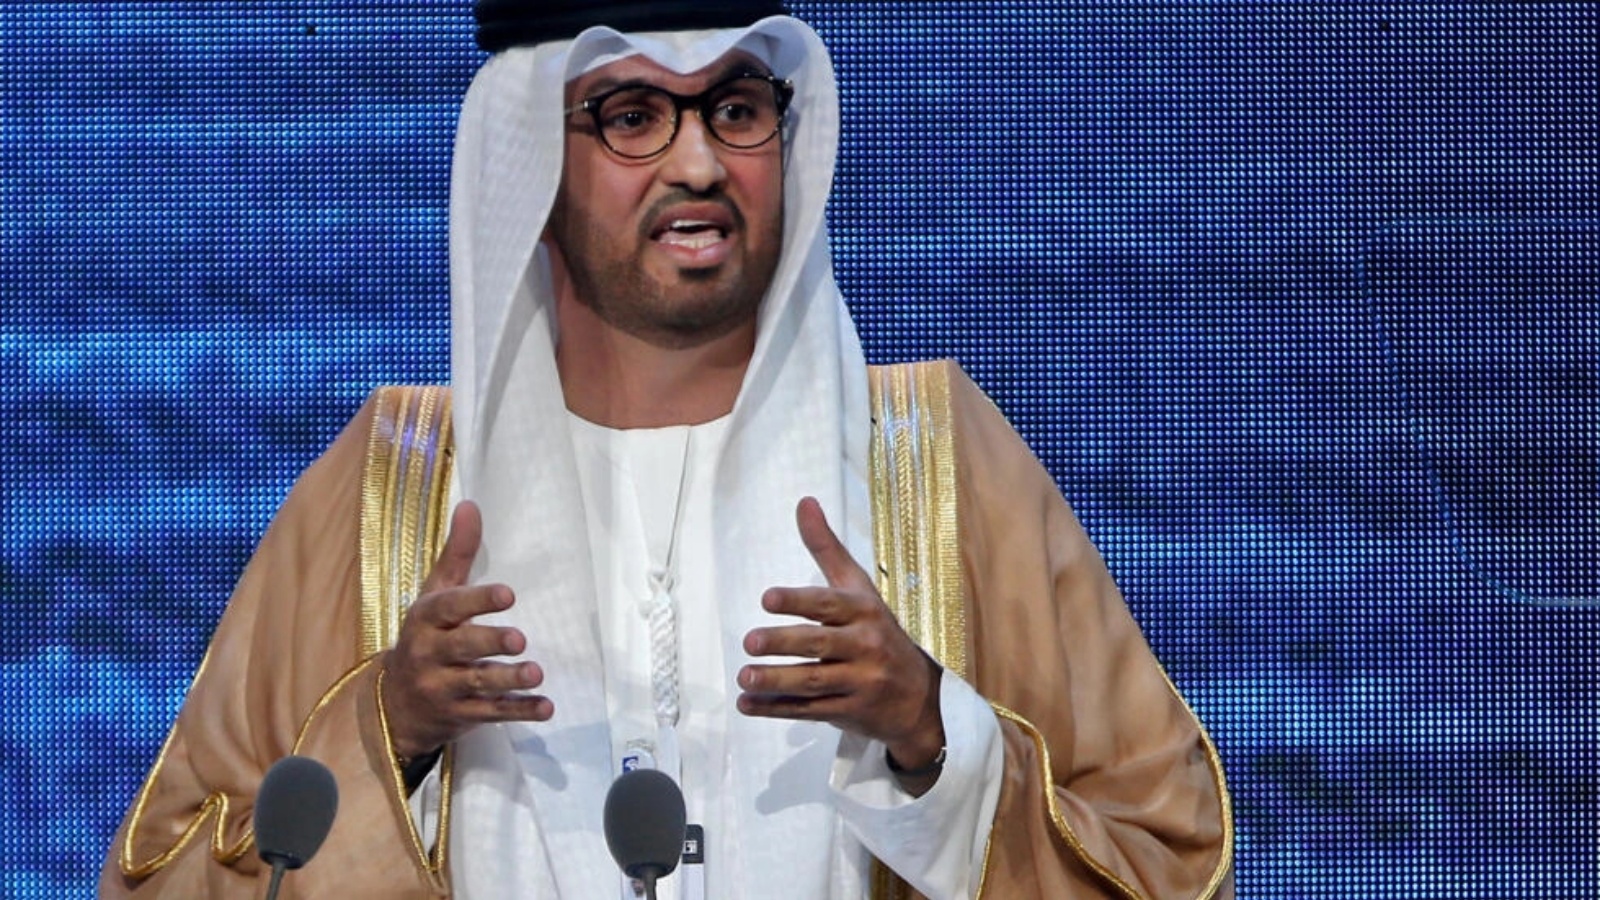 رئيس مؤتمر الأطراف حول المناخ (كوب28) الإماراتي سلطان الجابر رئيس شركة بترول أبوظبي في مؤتمر في العاصمة الإماراتية في 12 يناير 2023 